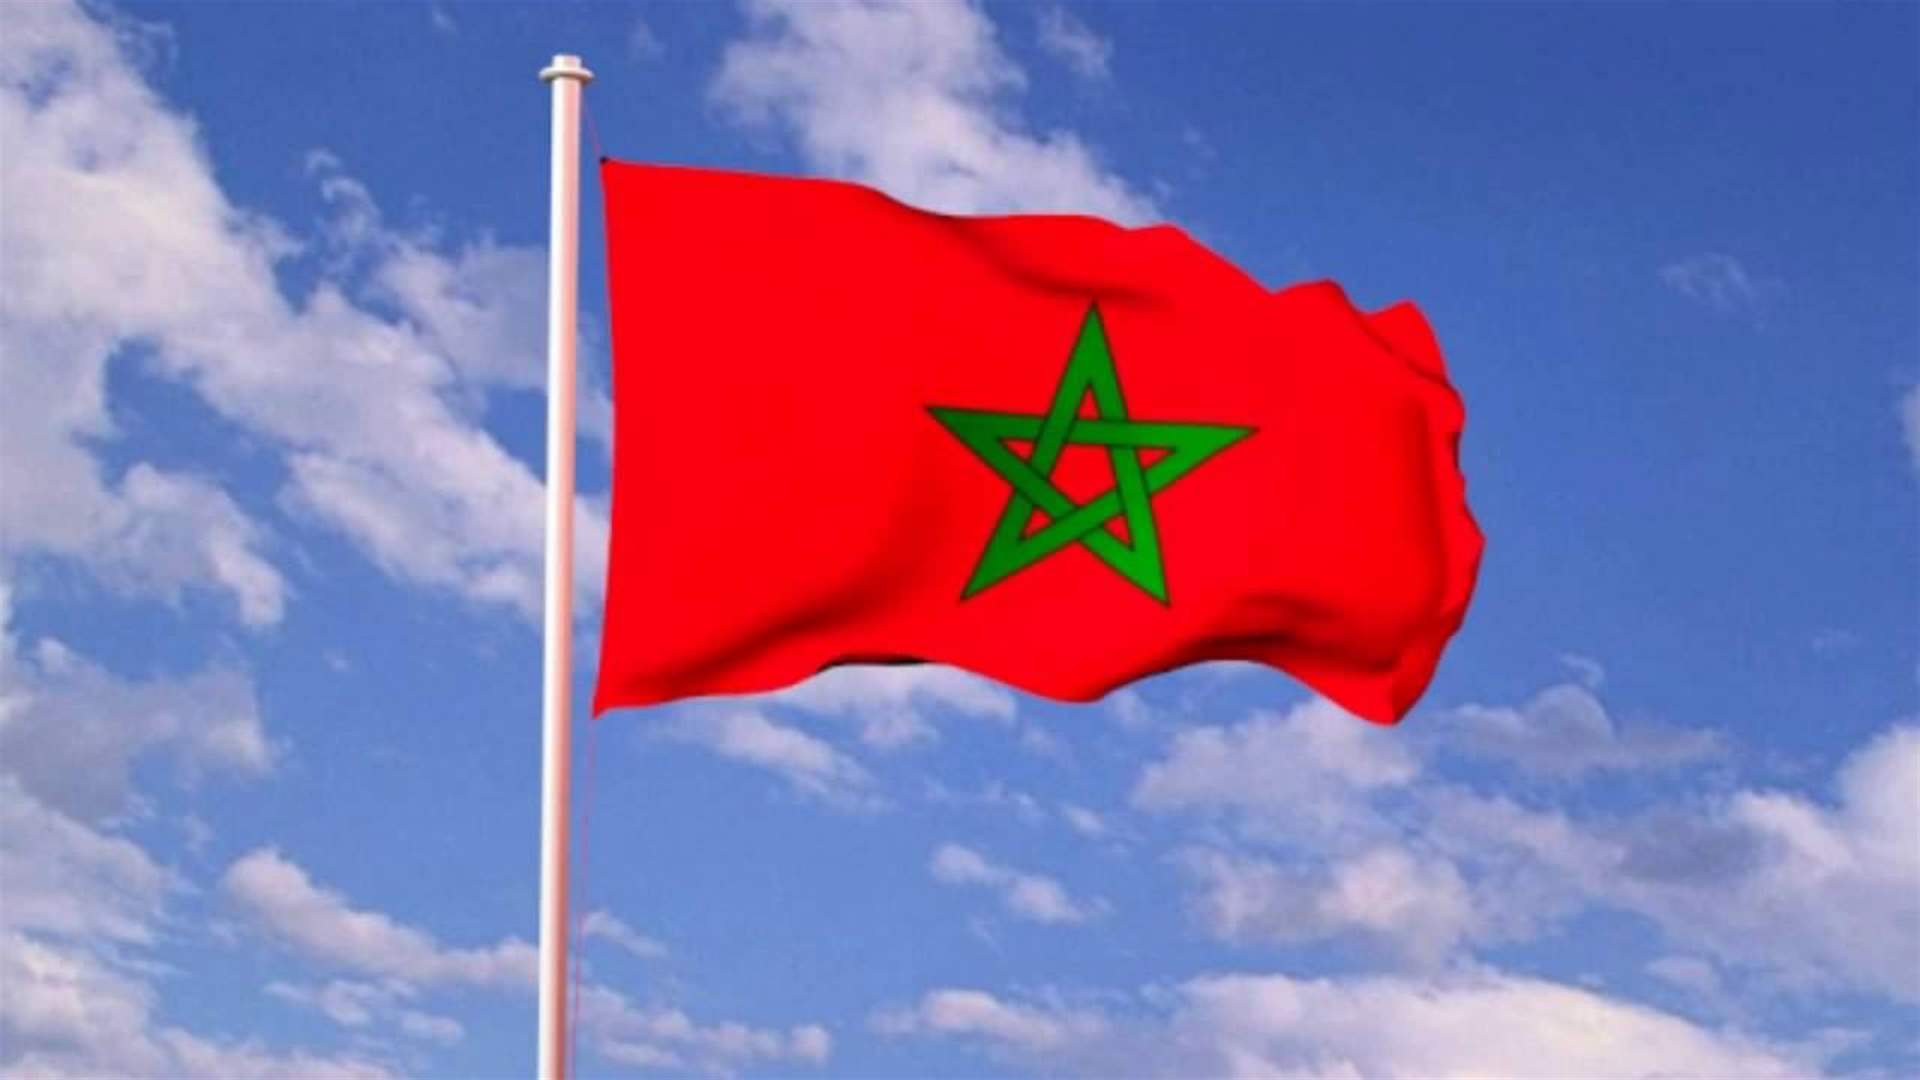 المغرب ينهي مهام سفيره في فرنسا في سياق جفاء بين البلدين